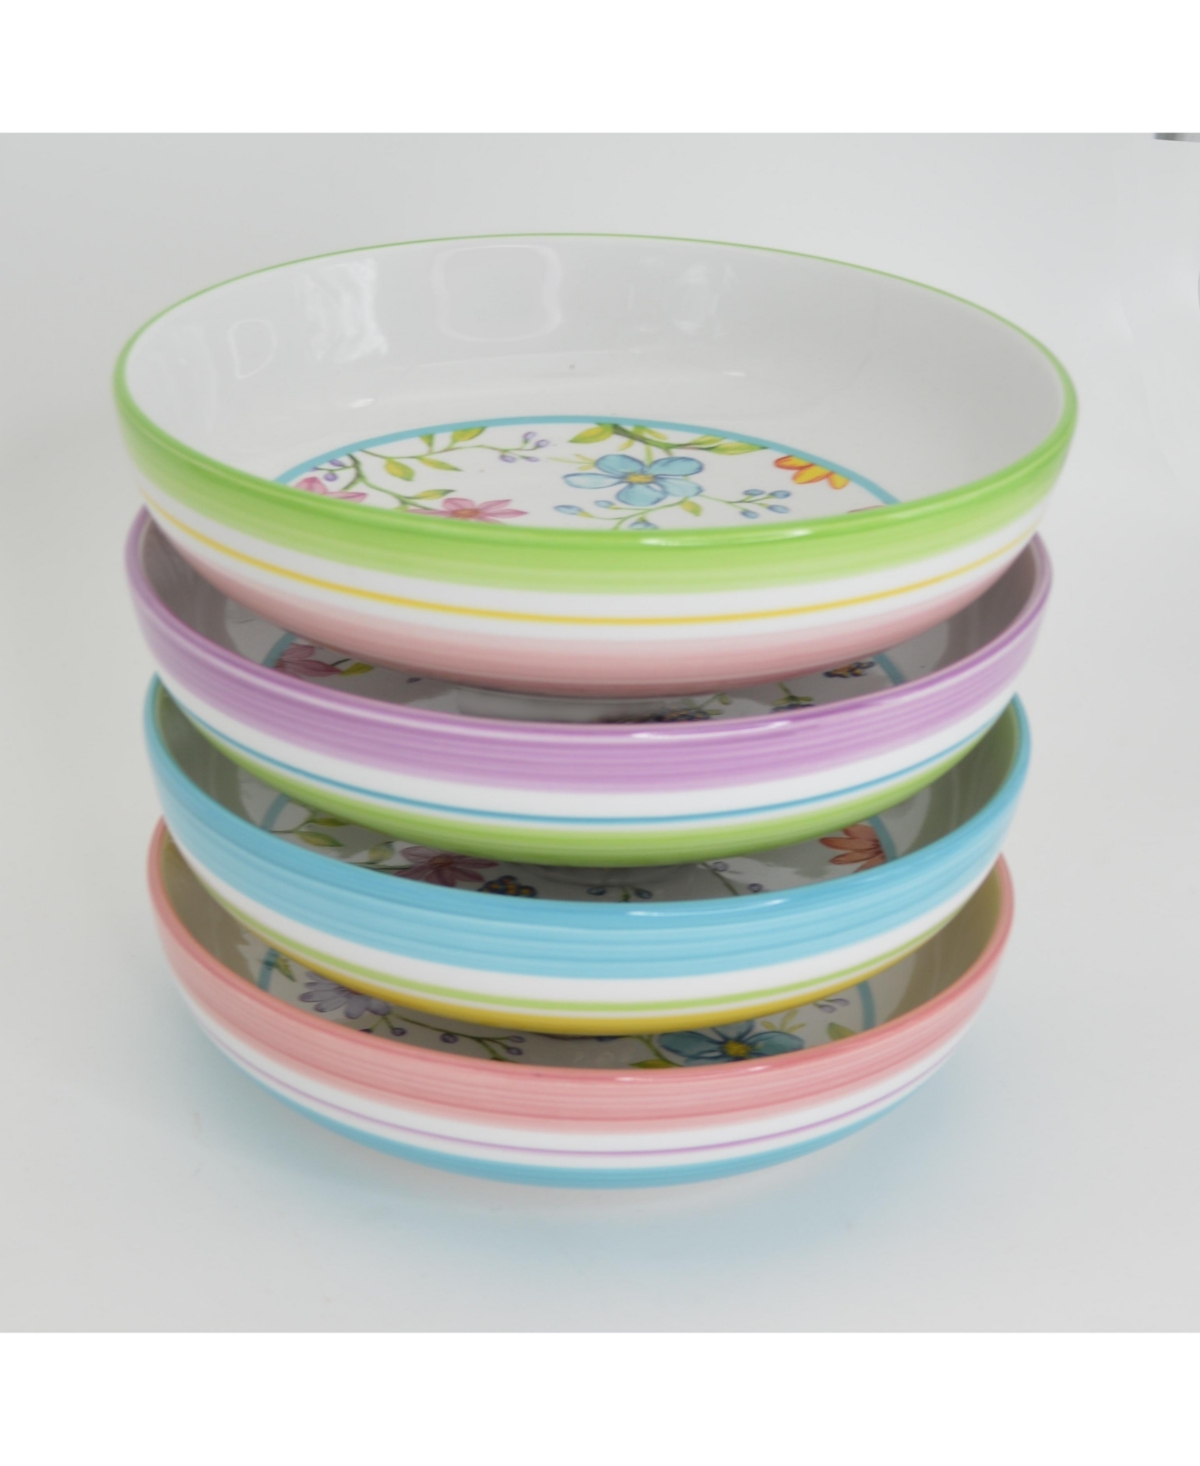 Charlotte 4 Piece Pasta Bowl Set - Multicolor